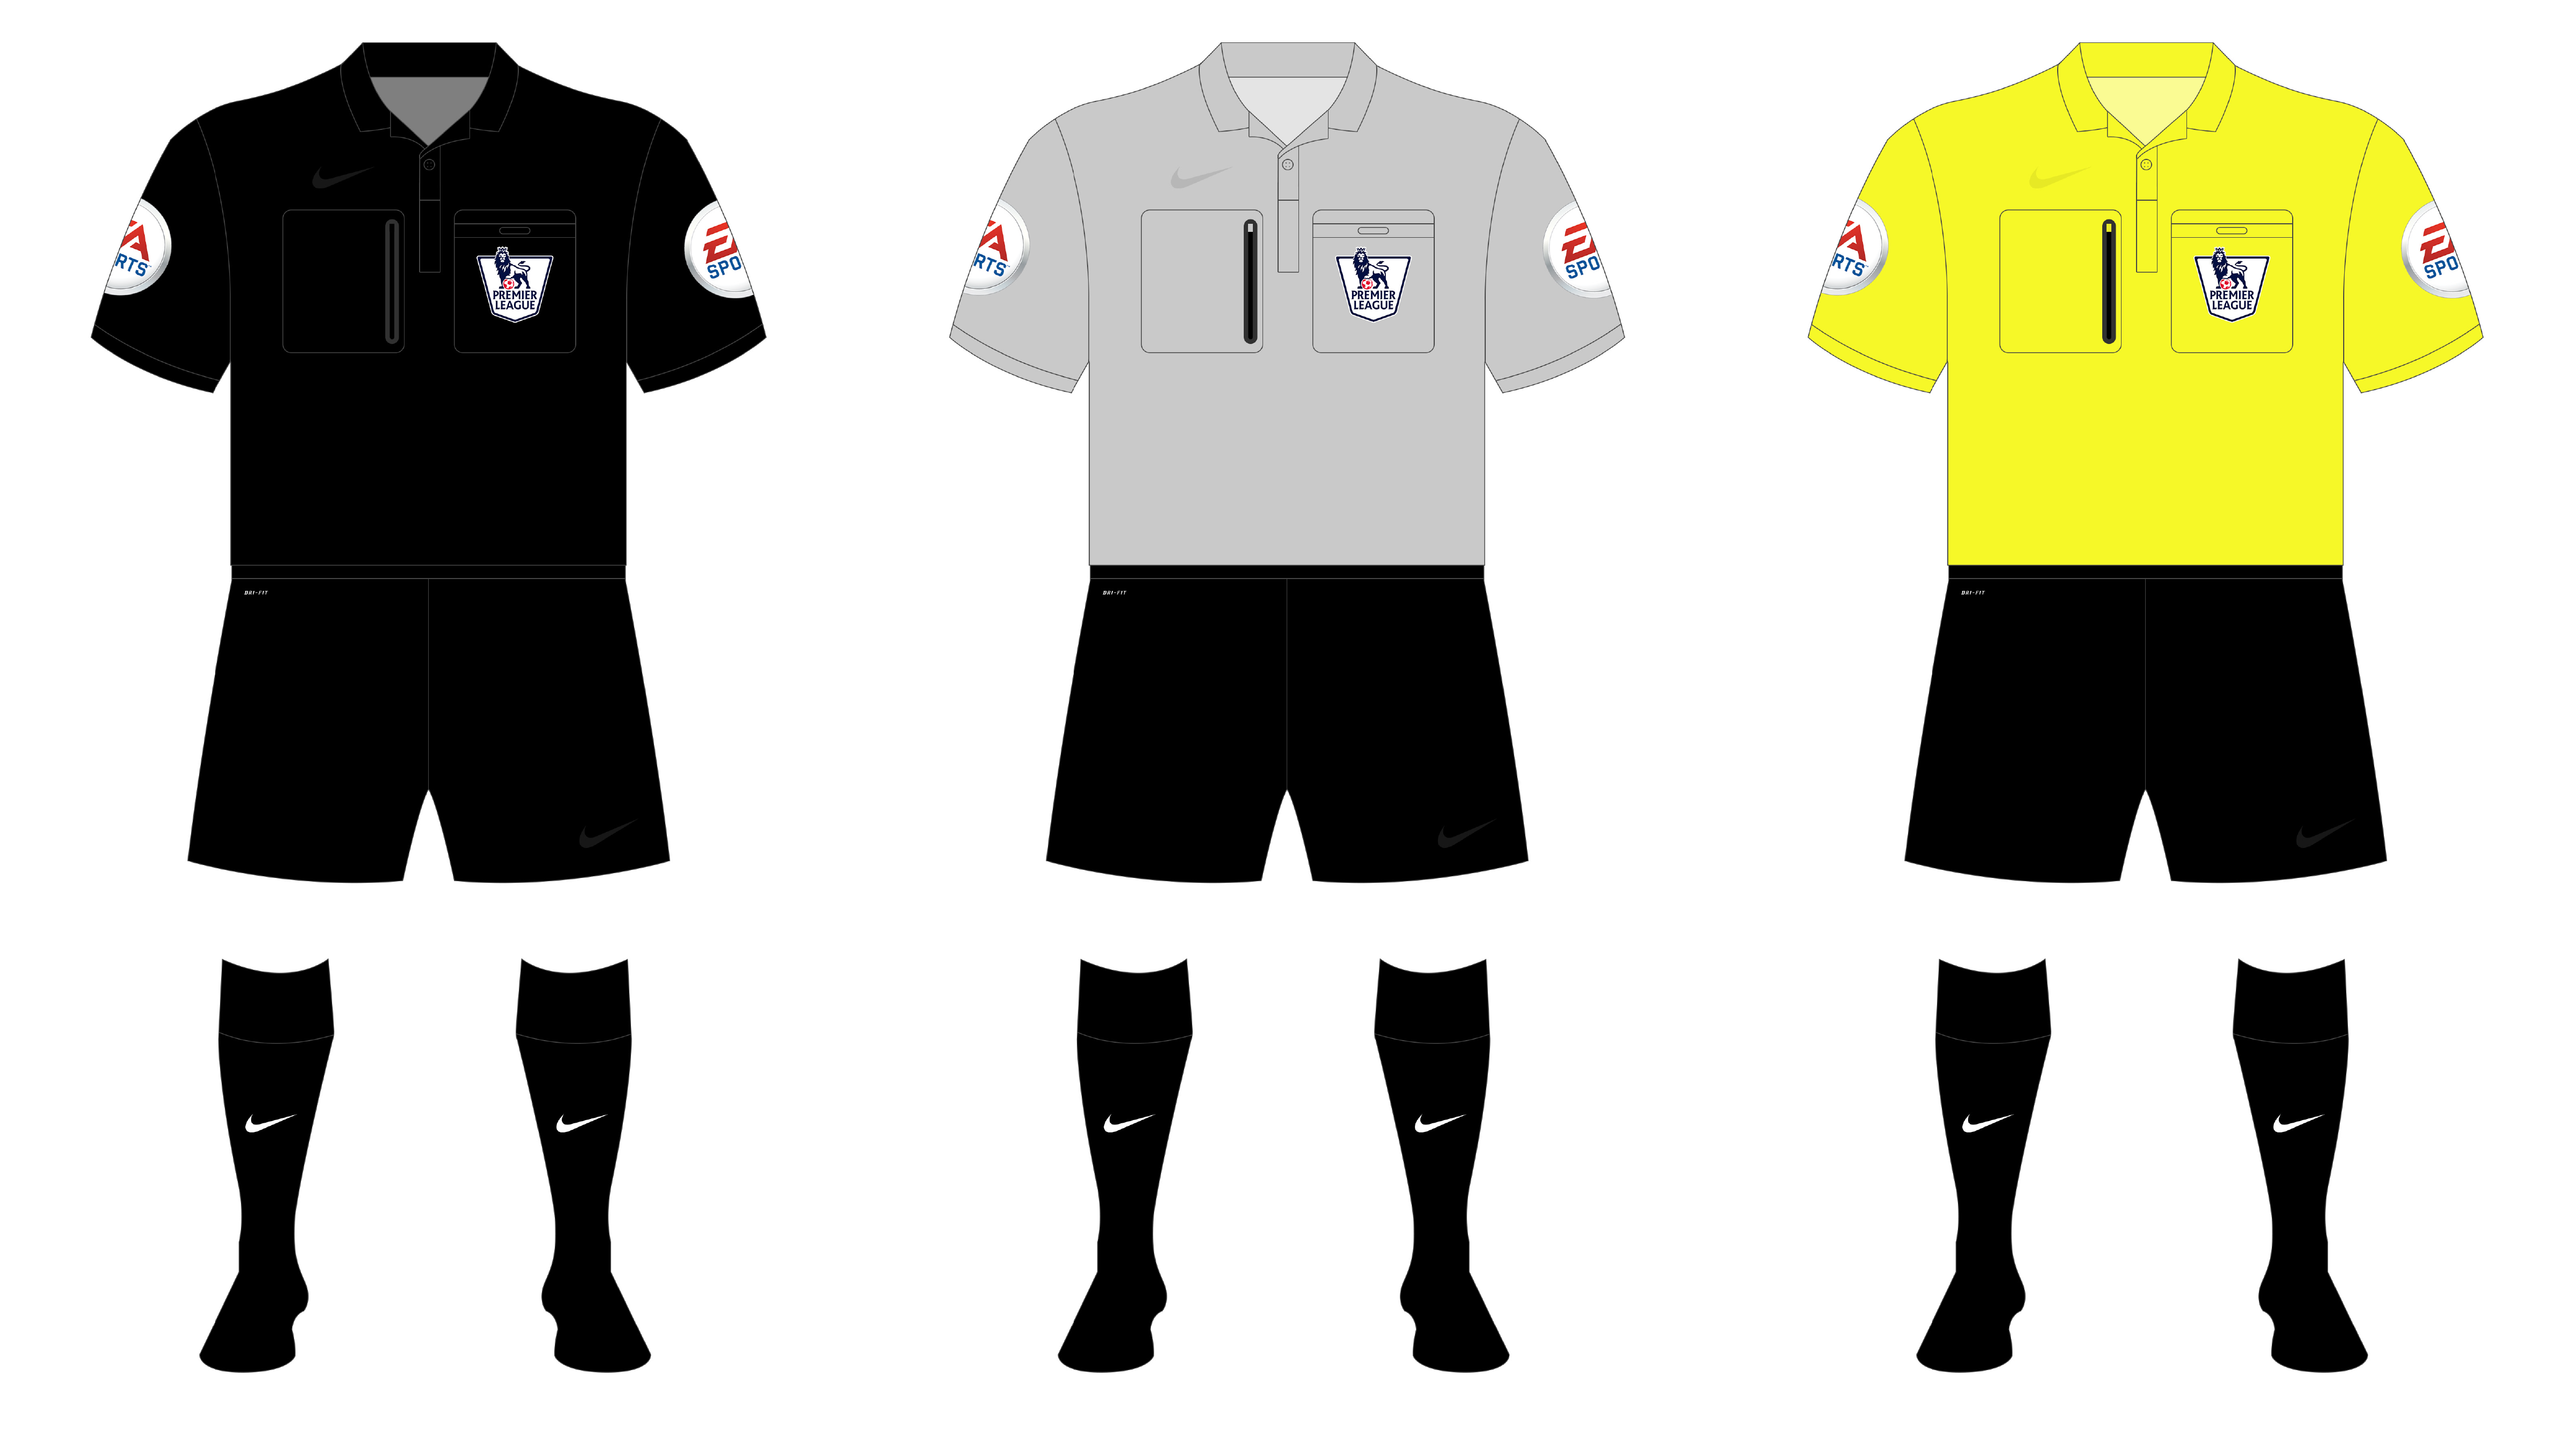 Major League Soccer – Referee Kit History